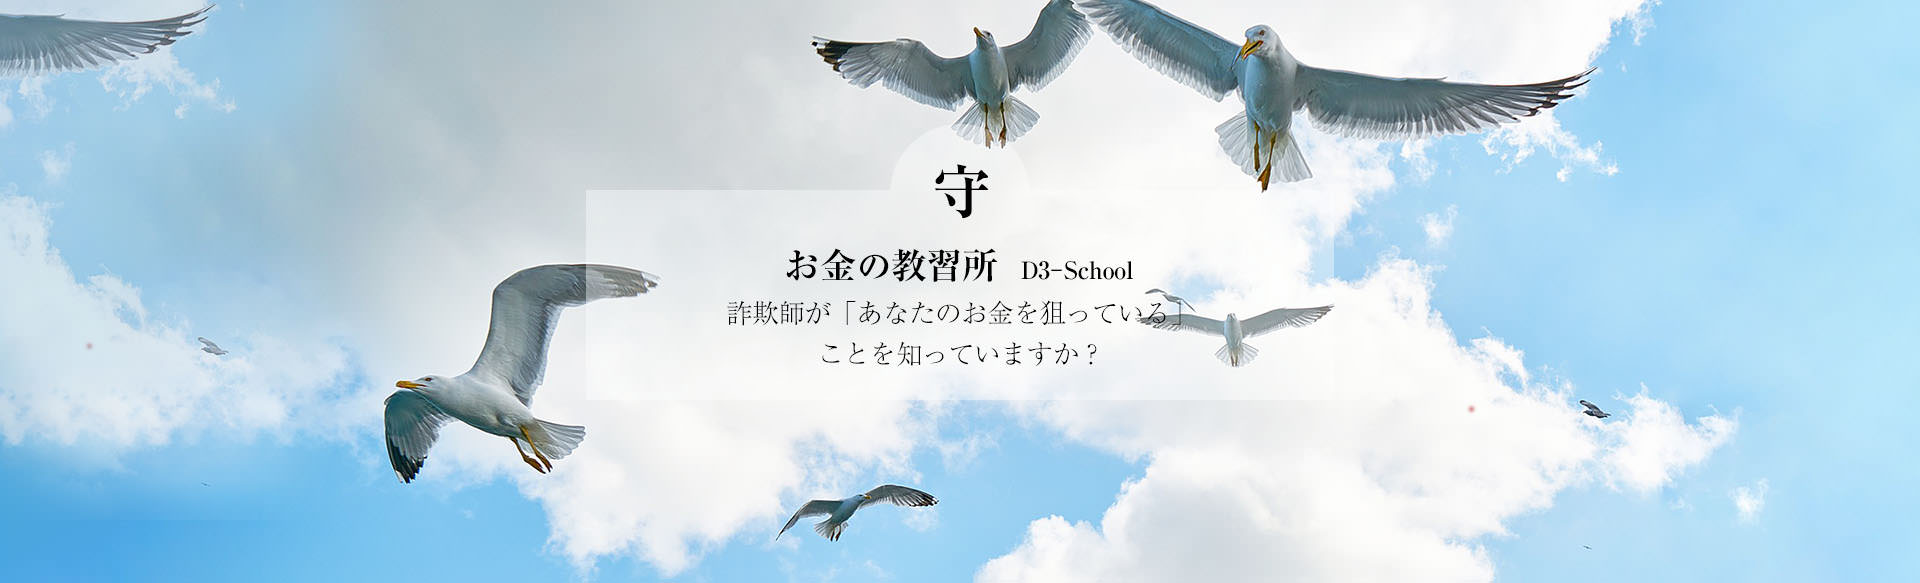 D3-School新大阪校